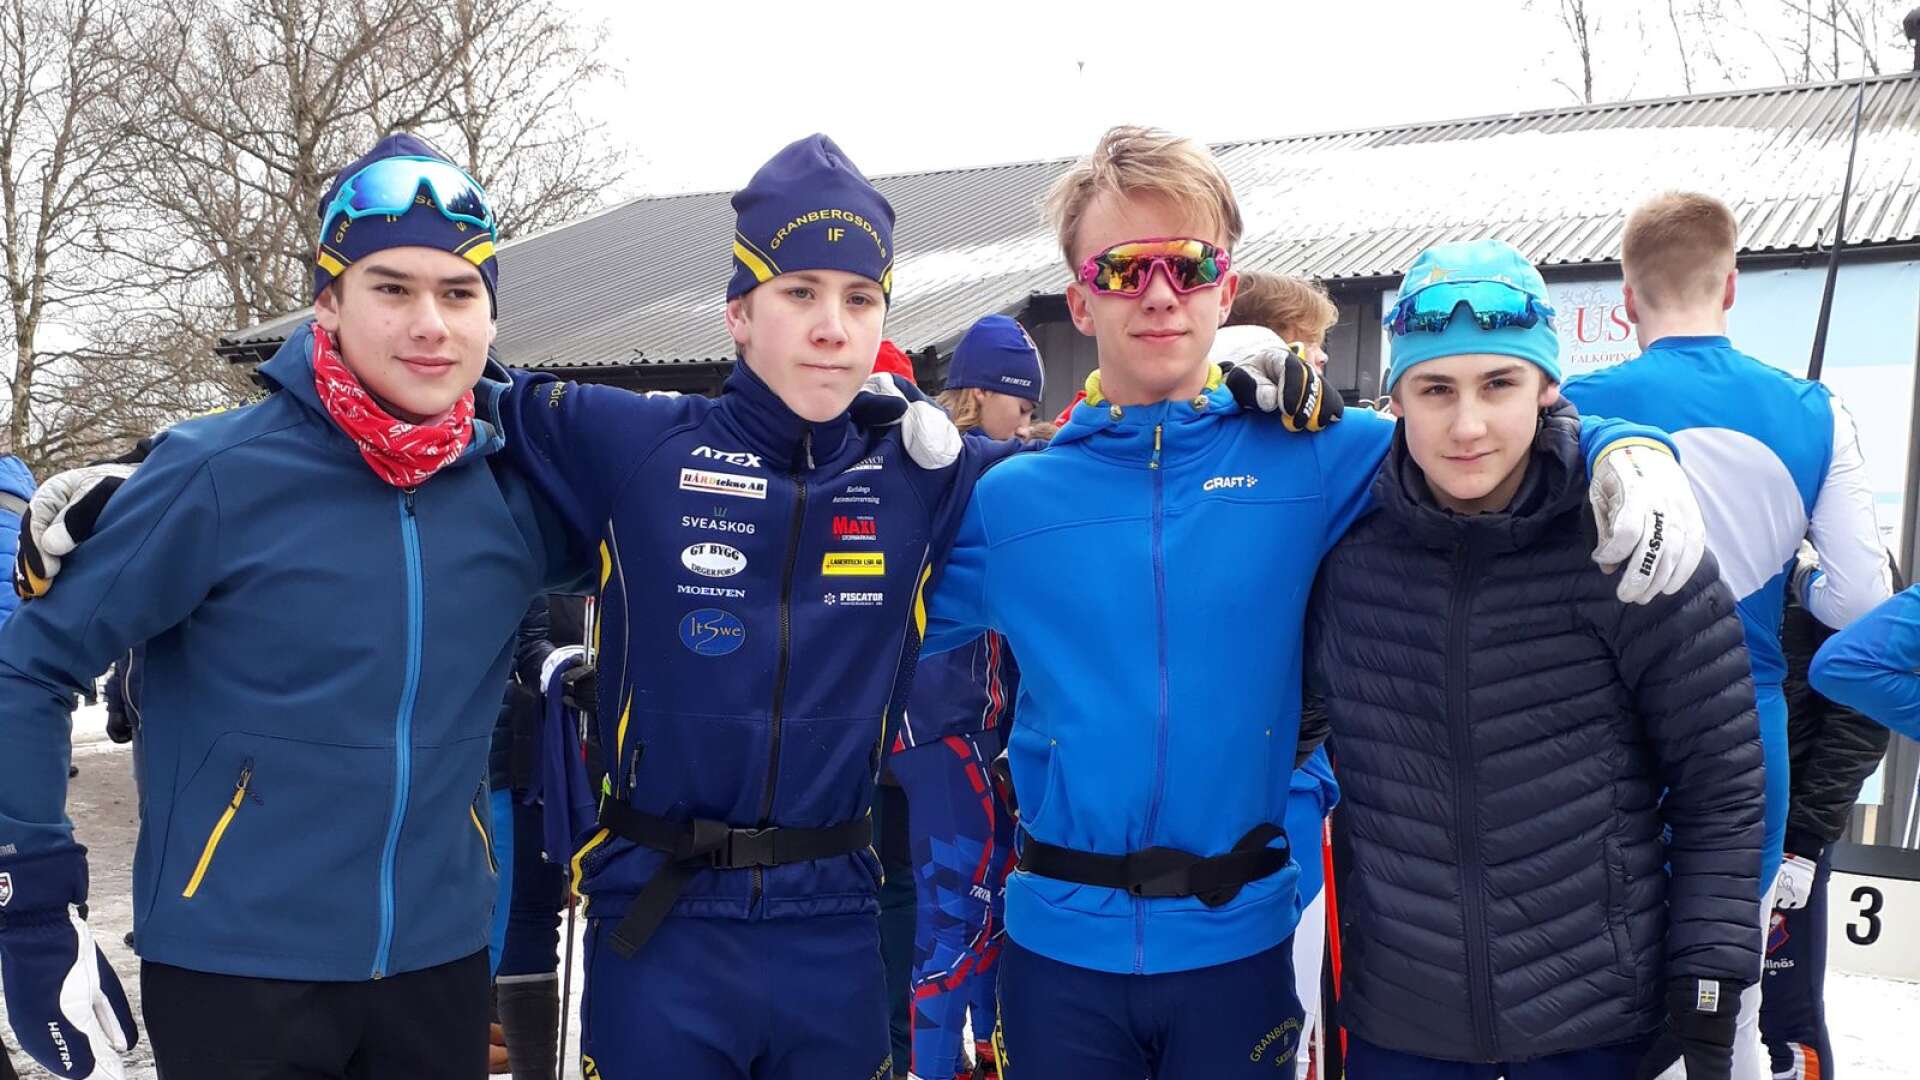 Det blev succé i USM för Granbergsdalkvartetten Simon Nilsson, Albin Källiden, Ludvig Berg, Elias Hedlund. Förutom individuella framgångar tog Granbergsdal ett oväntat lagguld i distans. 